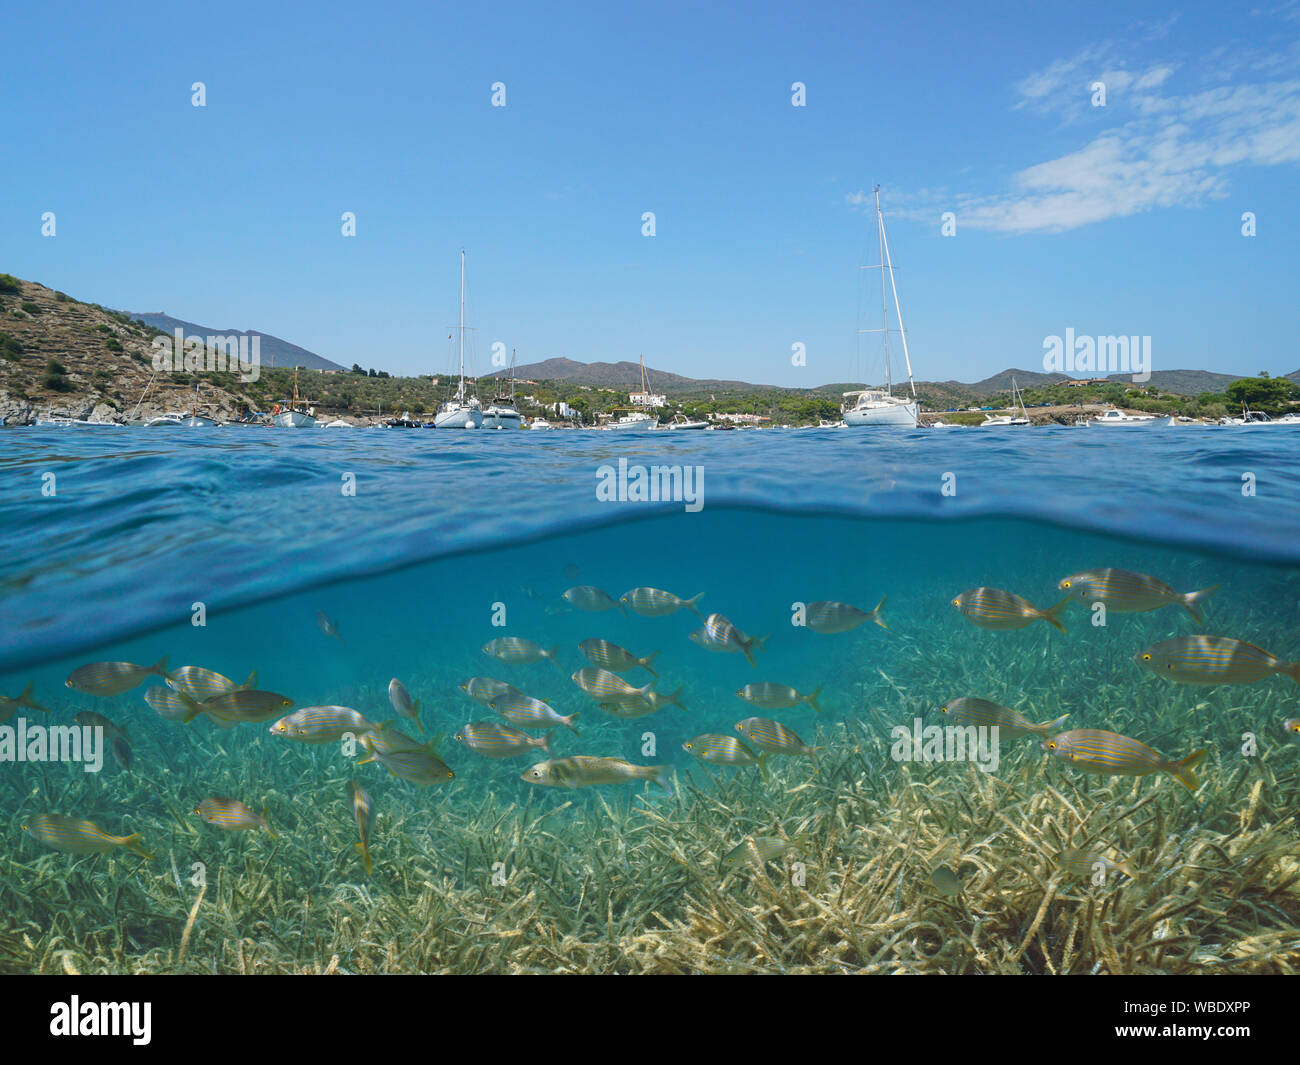 Espagne Costa Brava Cadaques, bateaux amarrés dans la baie de Portlligat avec les poissons et les herbiers marins sous l'eau, mer Méditerranée et partagé au-dessus et au-dessous de la surface Banque D'Images